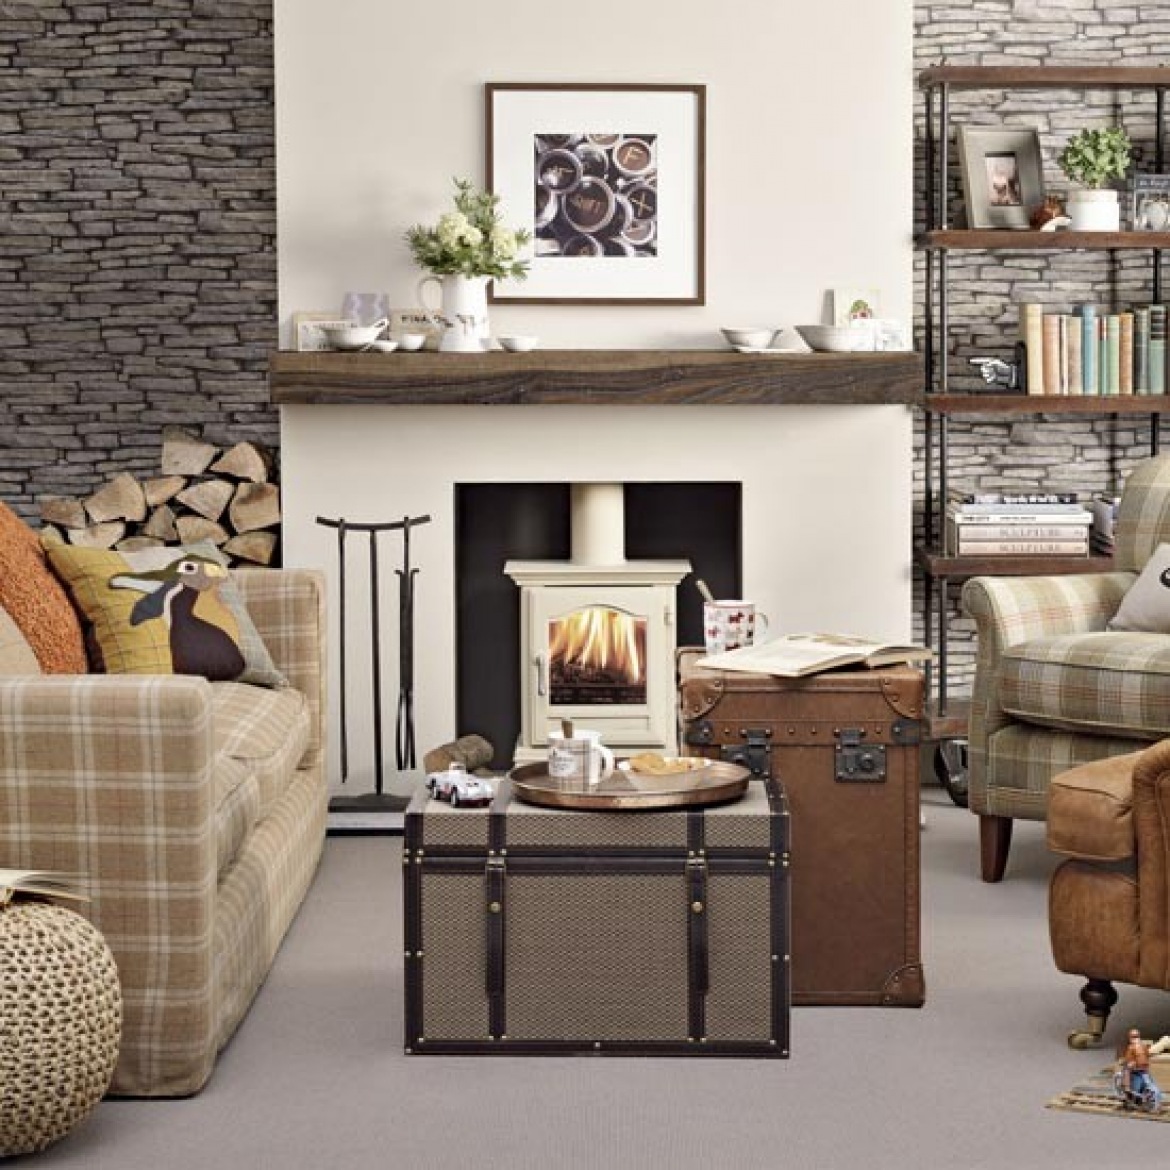 Kamień łupkowy na ścianie w salonie z białym kominkiem z drewnianą półką,kufry skrzynie w roli stolków i kraciaste sofy i fotele (26101)